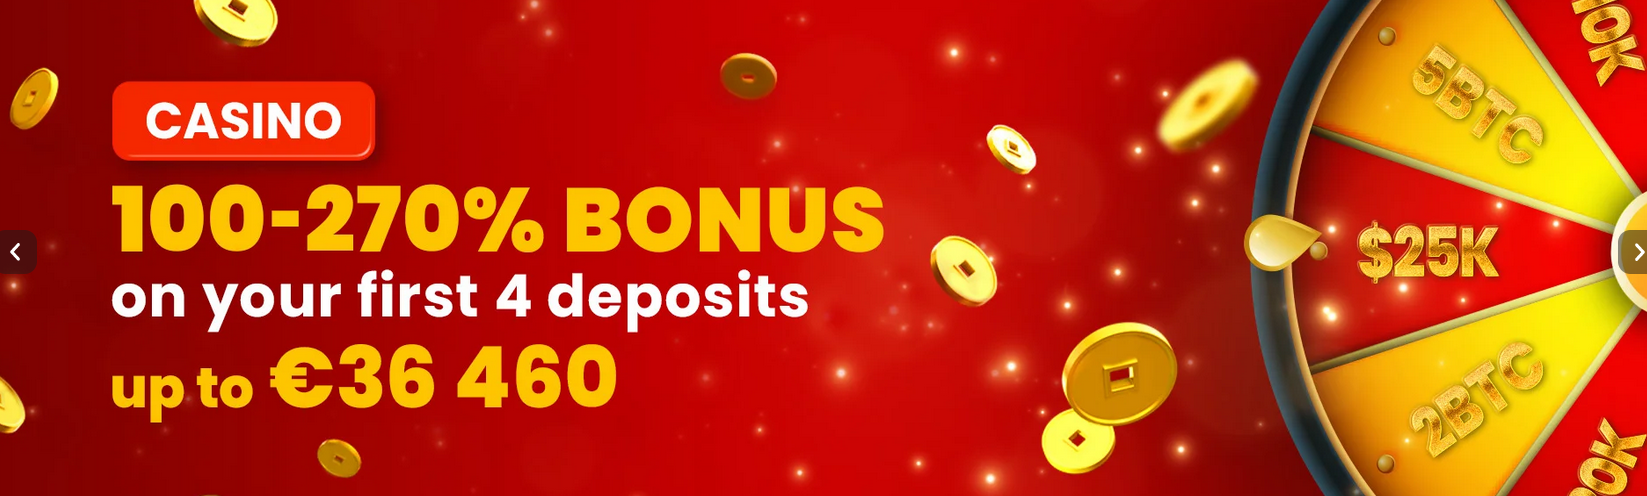 Chipstars Casino Welcome Bonus